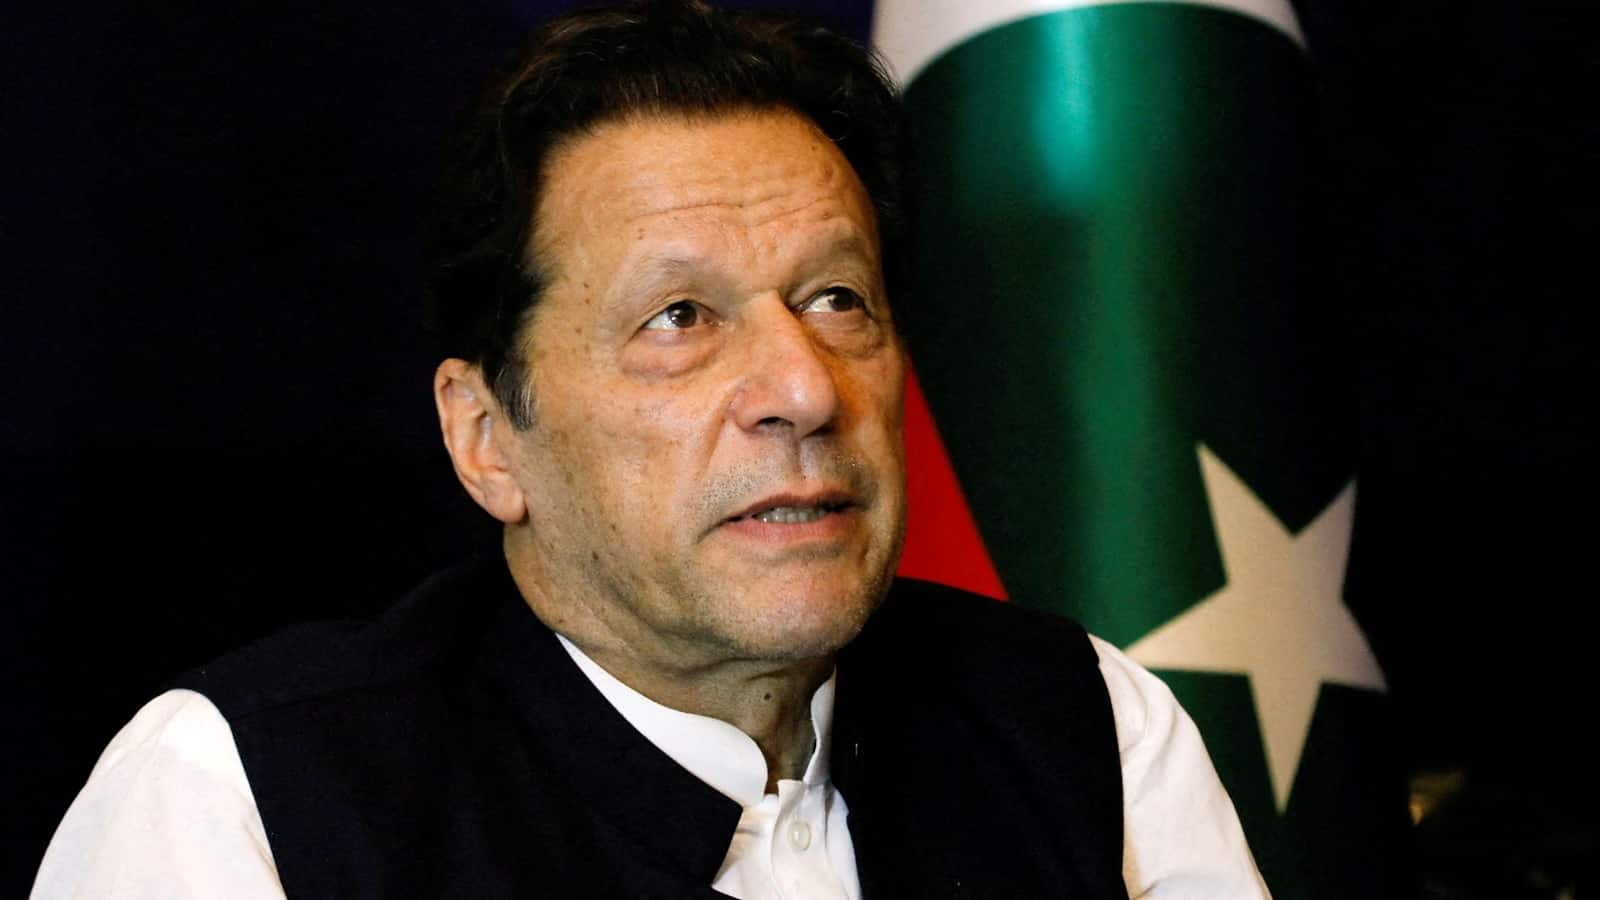 पाकिस्तान सरकार ने Imran Khan की पार्टी PTI पर बैन लगाने का लिया फैसला